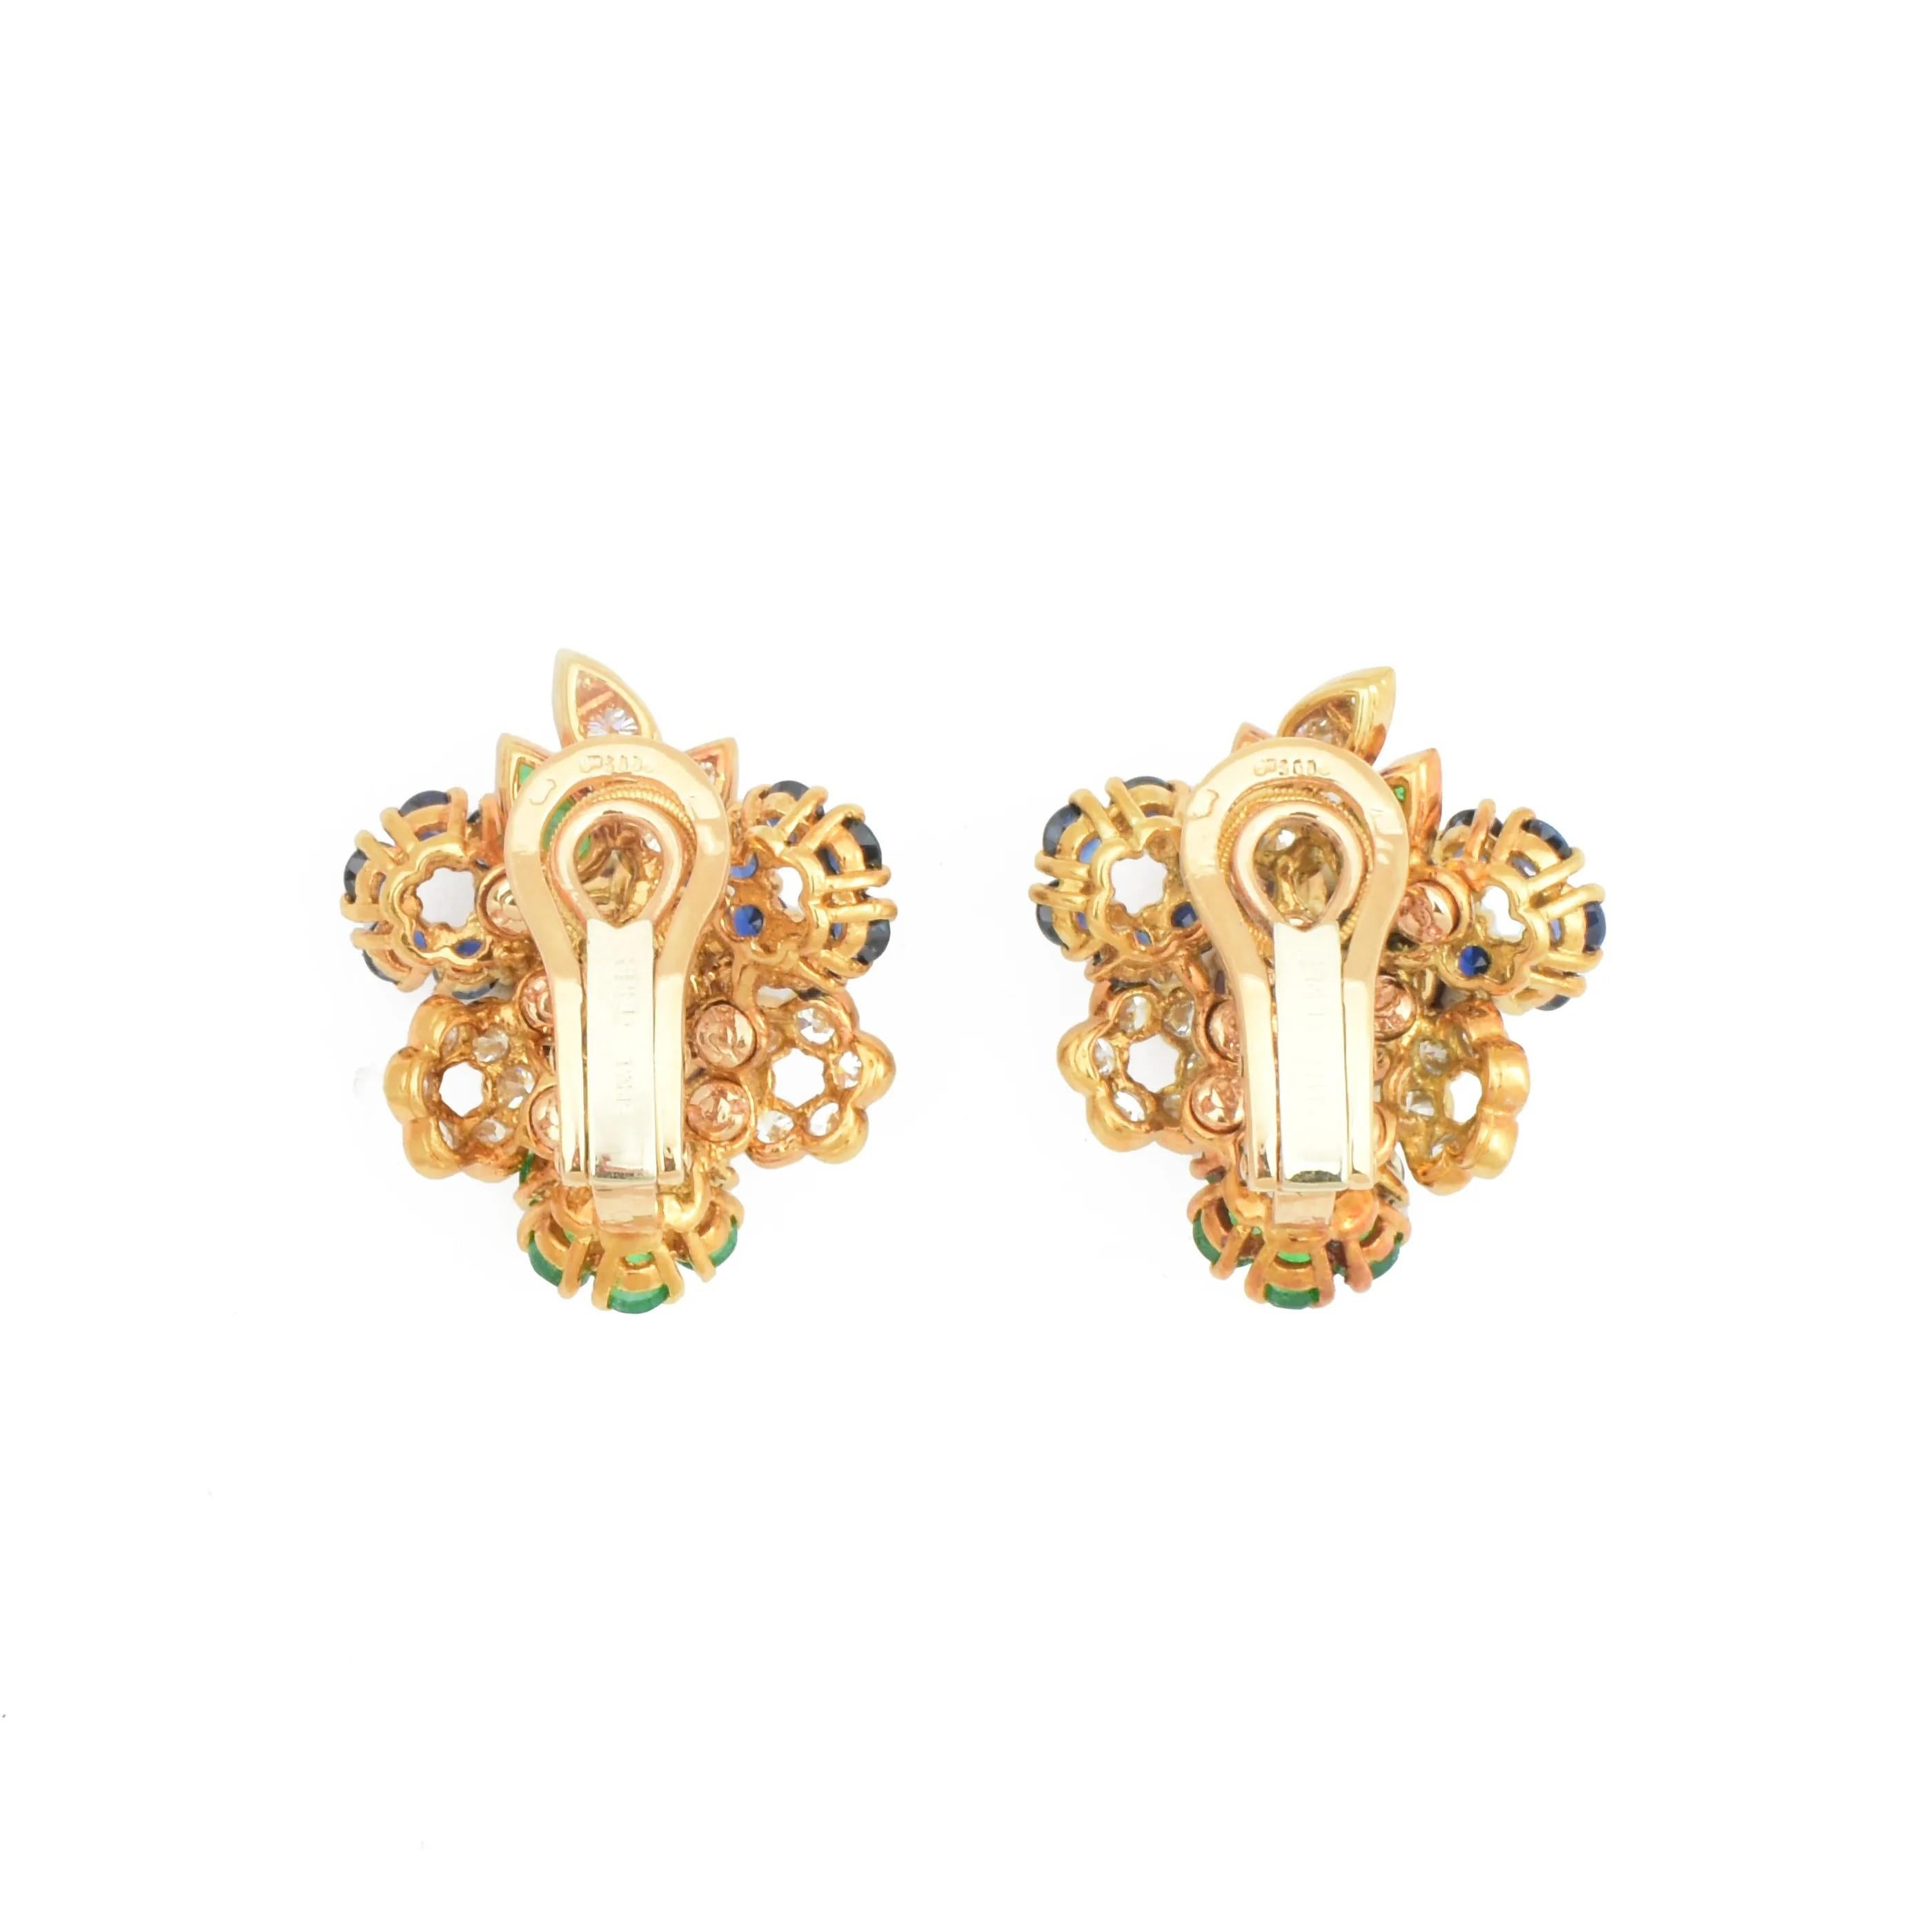 Une superbe paire de boucles d'oreilles à clip colorées par Fred of Paris vers 1970.

Modèles en or jaune 18 carats conçus comme des bouquets stylisés.

Sertie de rubis, saphirs, émeraudes et diamants naturels, elle est accompagnée de son étui